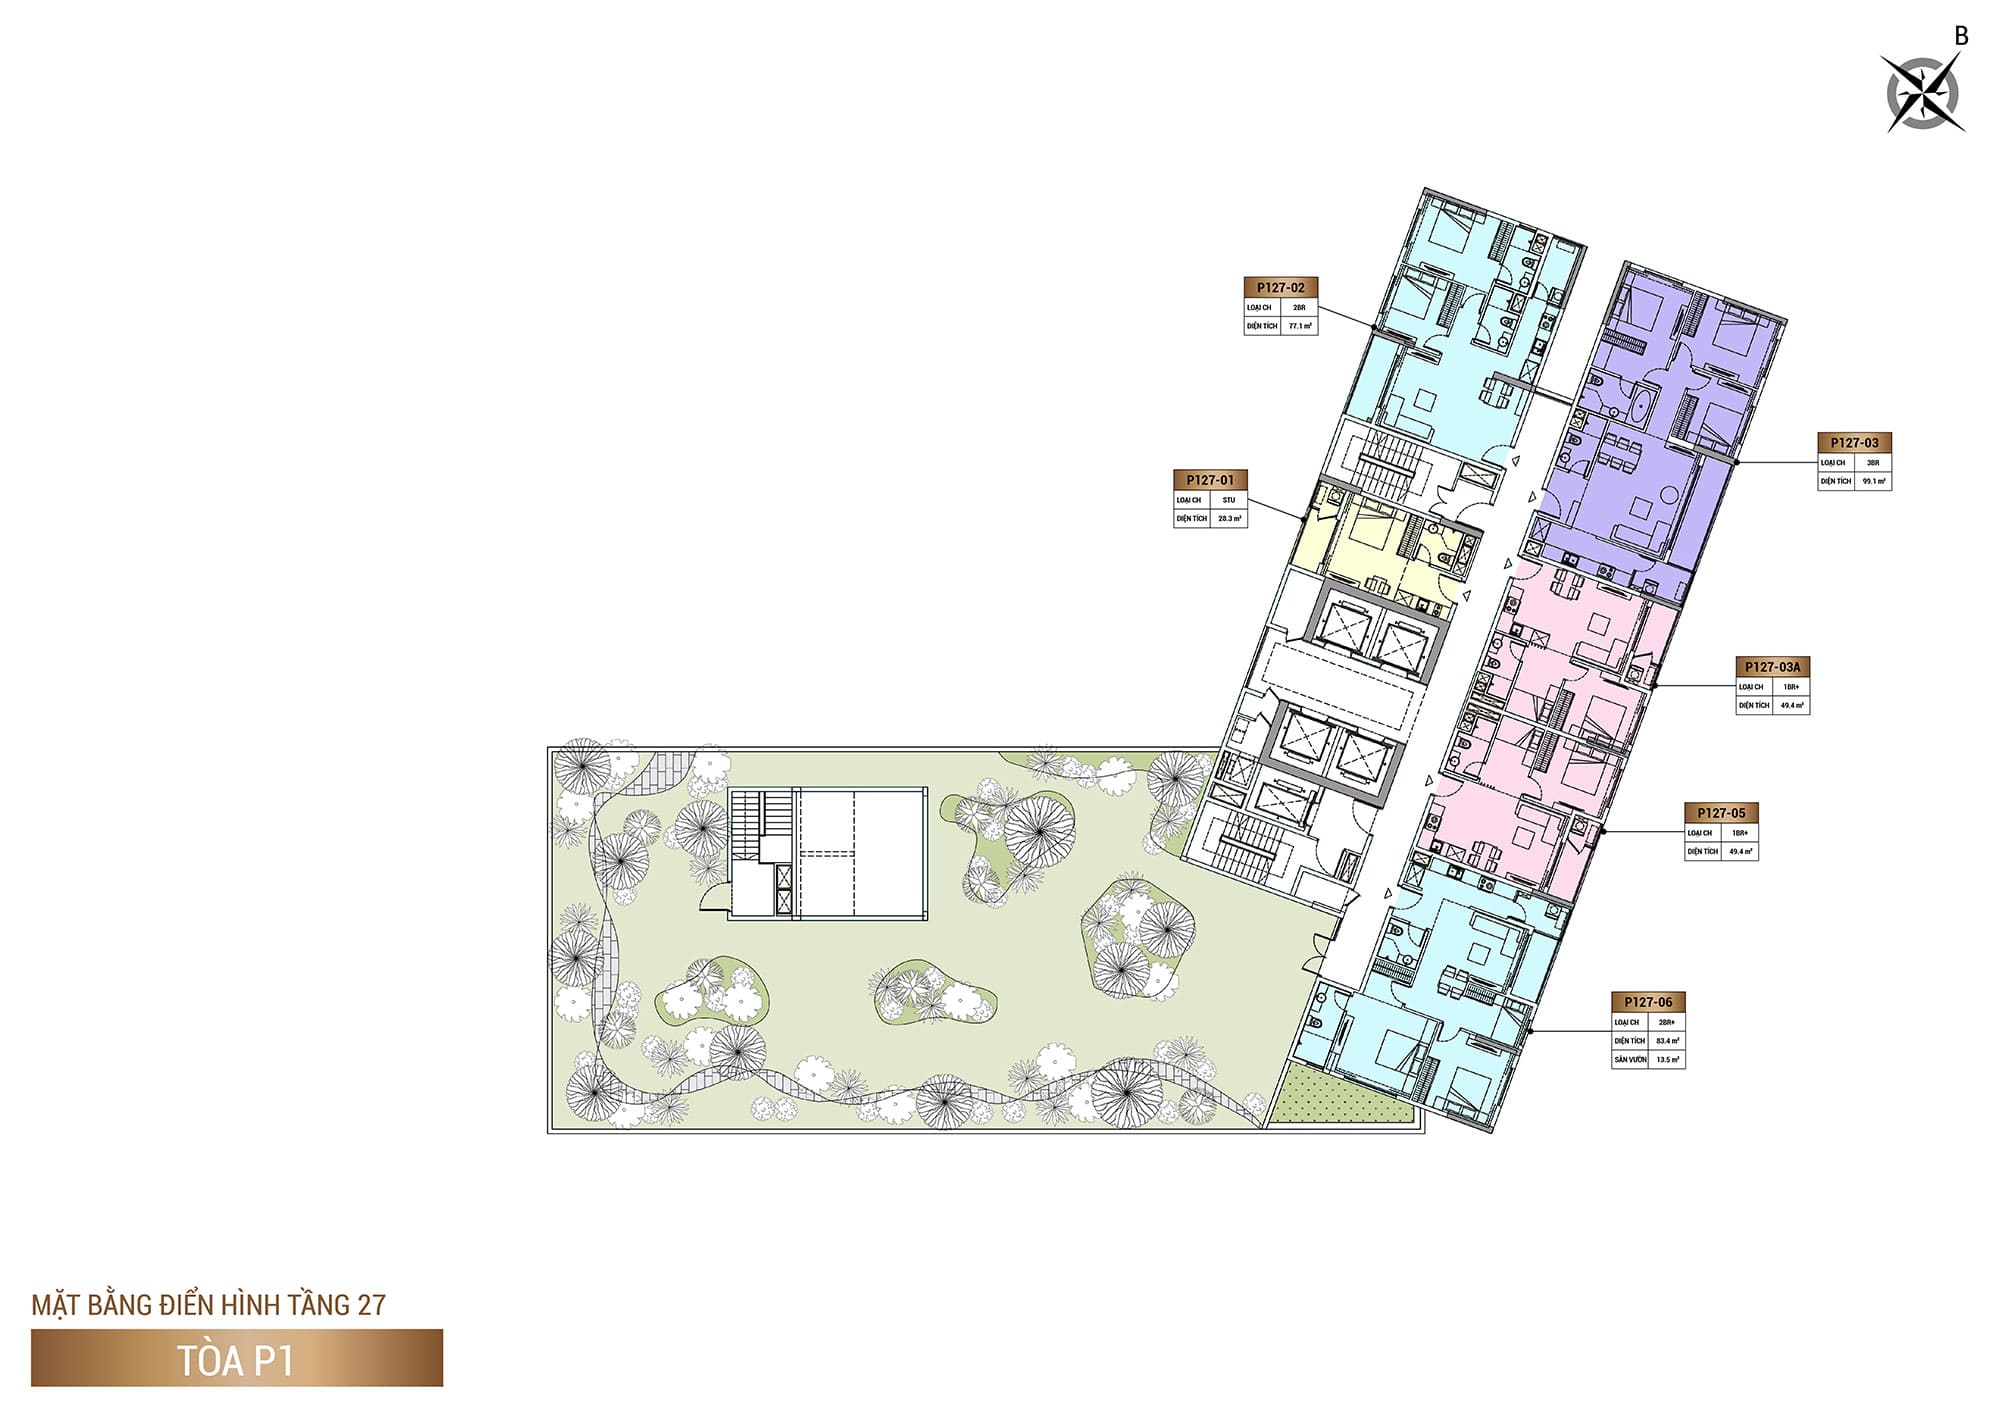 Mặt bằng Tầng 27, Tòa P1, phân khu The Panoma dự án Sun Cosmo Residence.